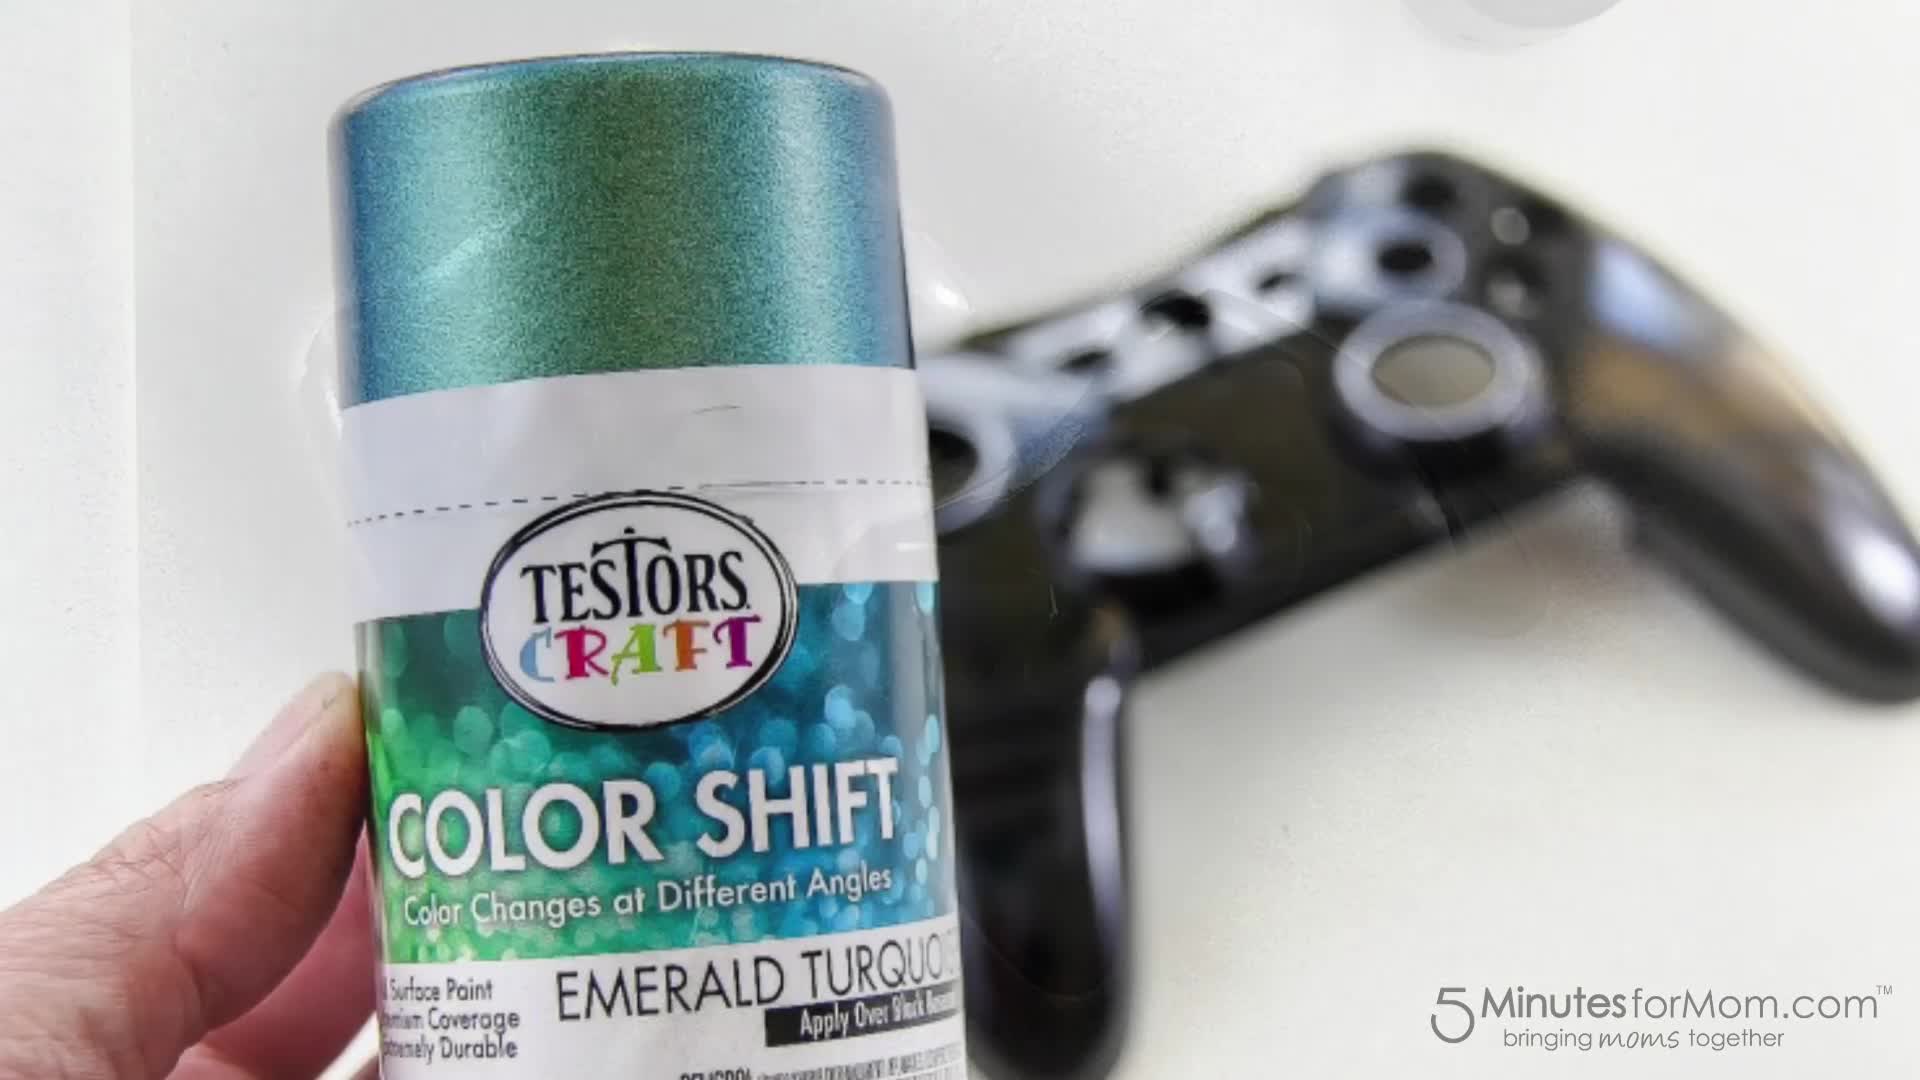 Testors Color Shift Spray Paint, Hobby Lobby, 1706316